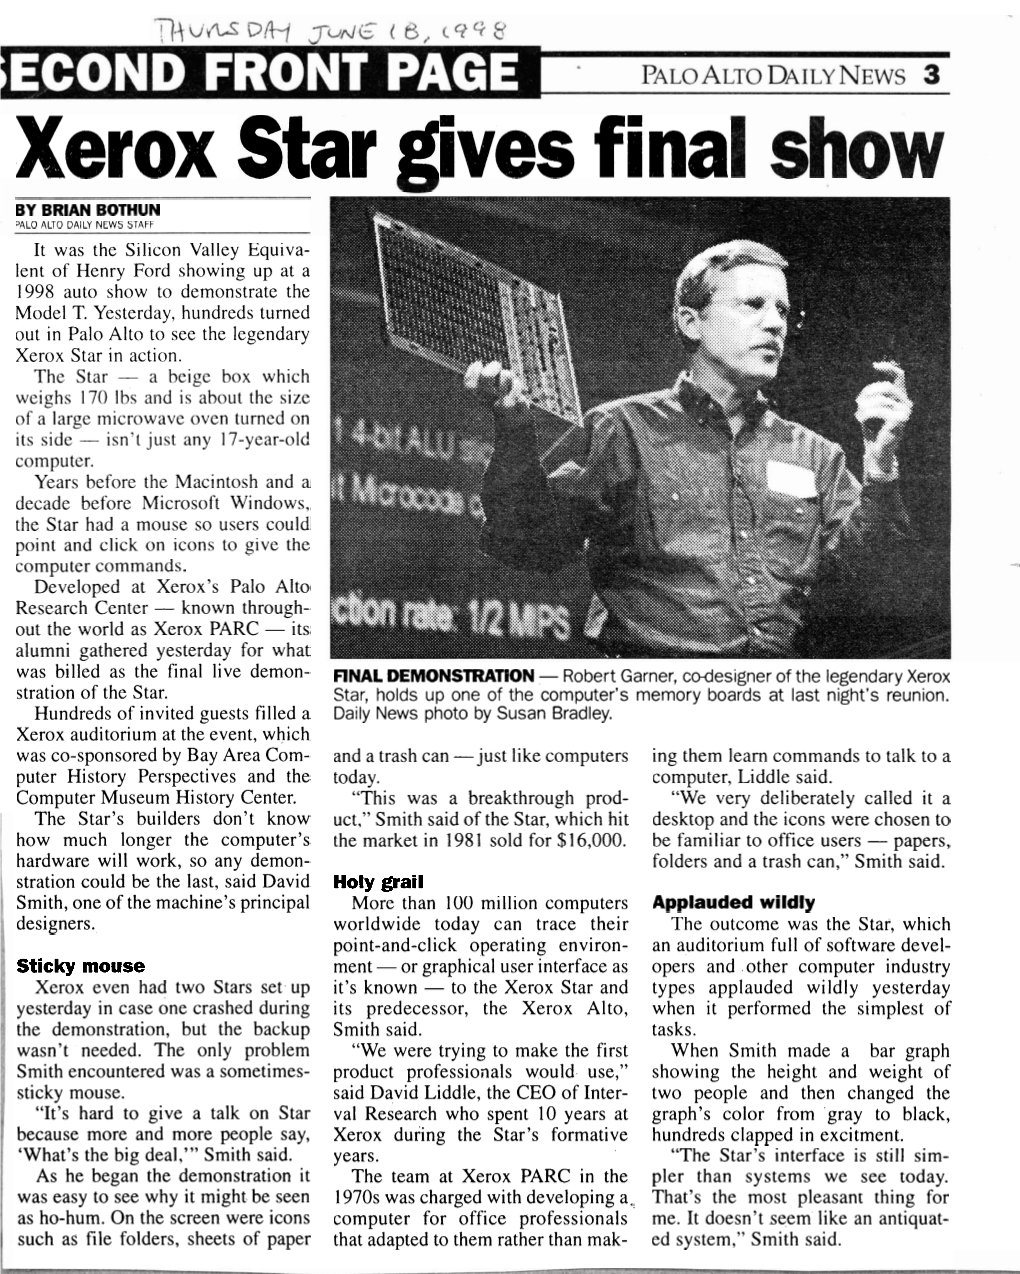 Robert Garner and Xerox Star